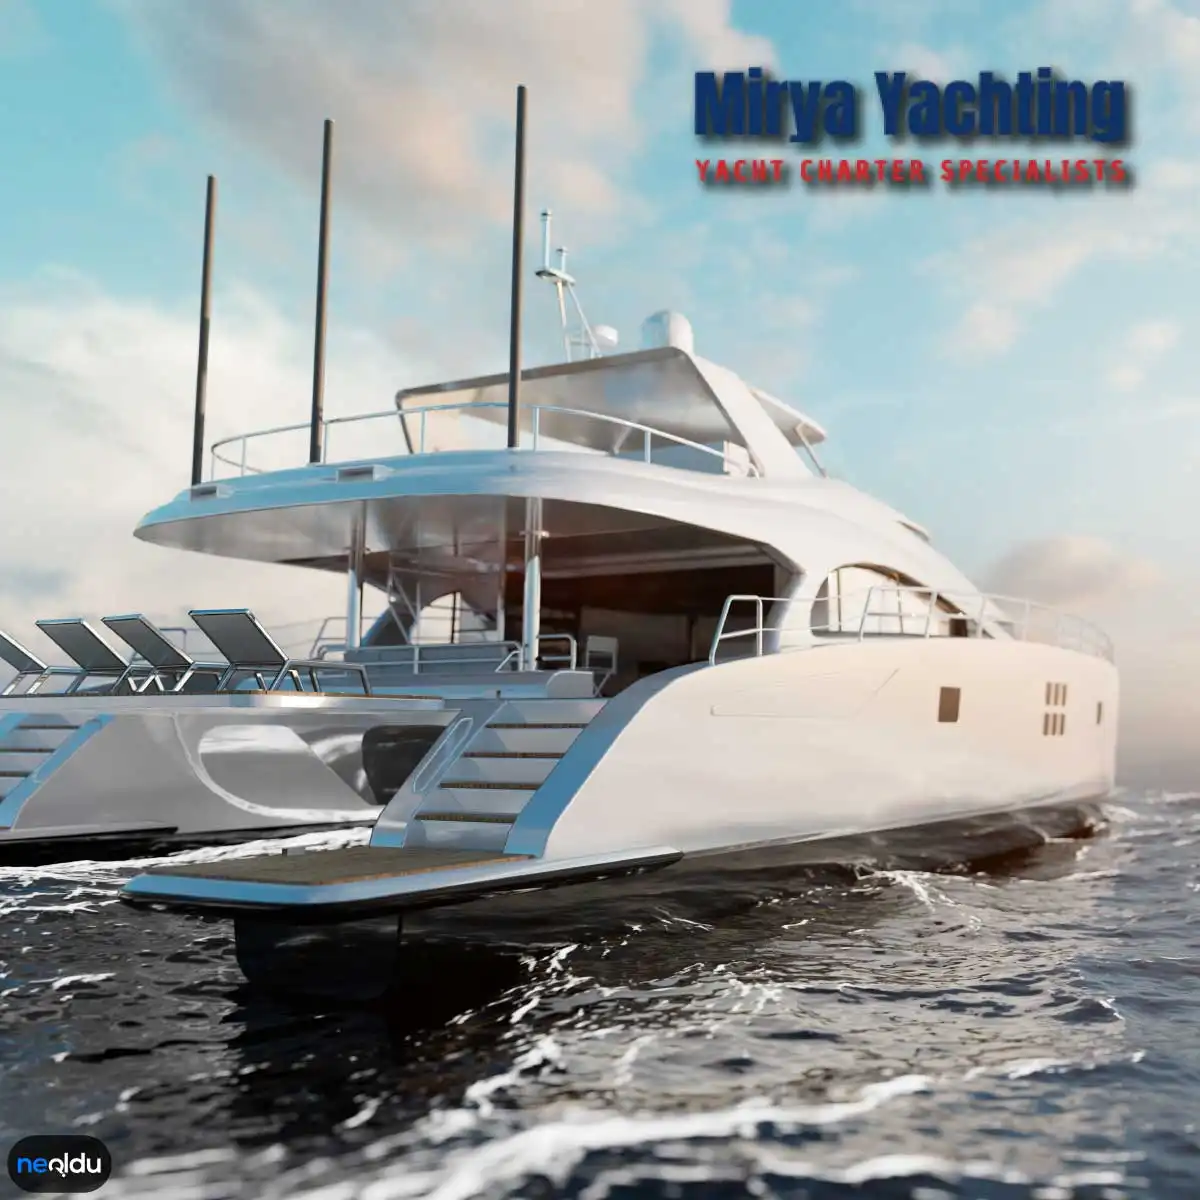 Mirya Yachting